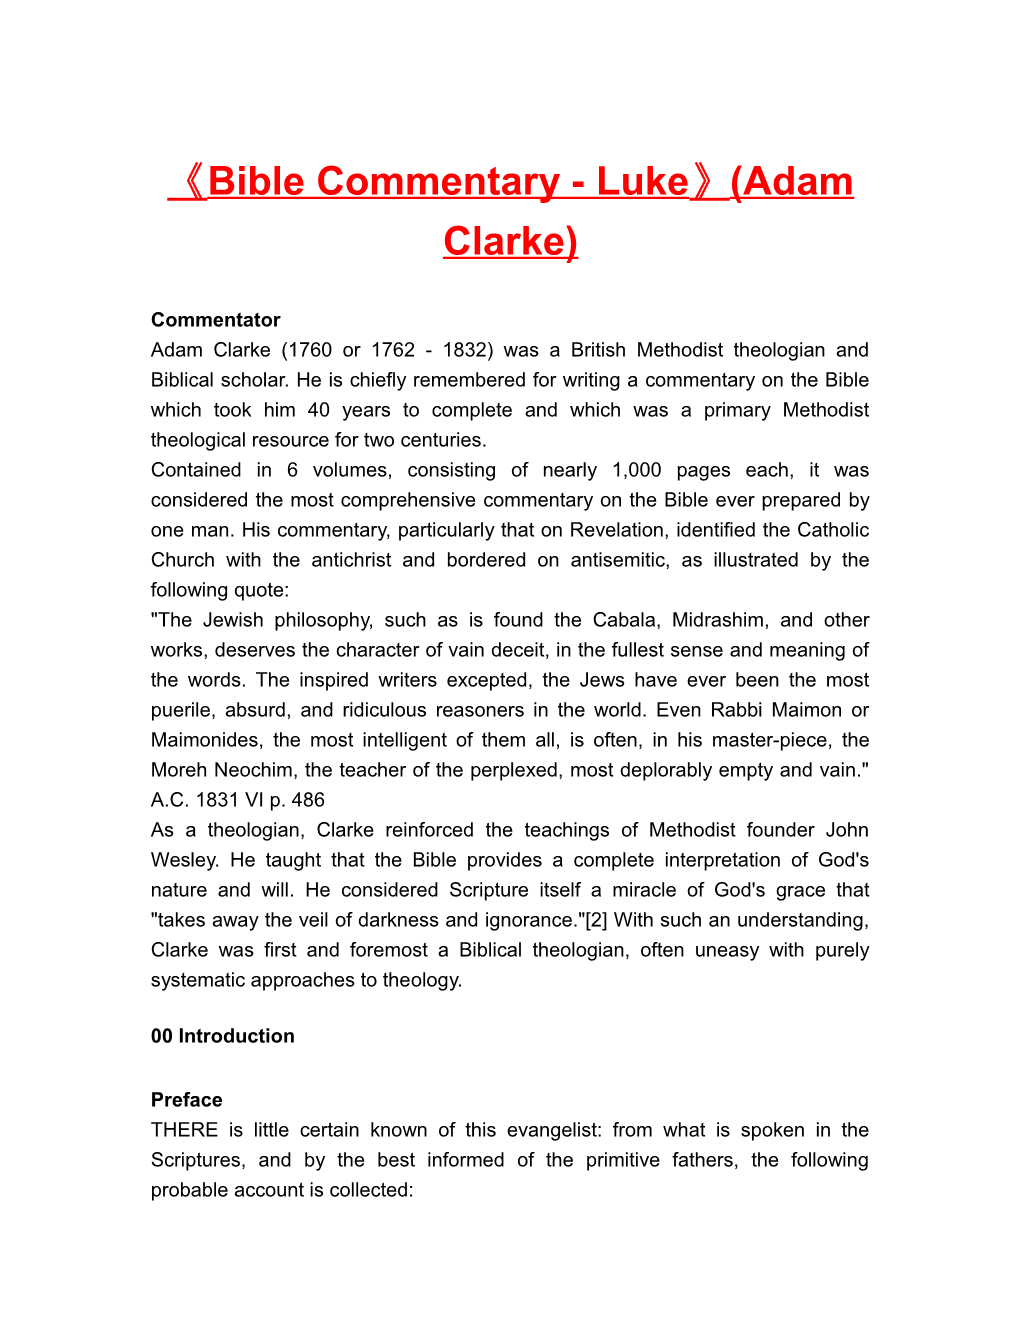 Bible Commentary - Luke (Adam Clarke)